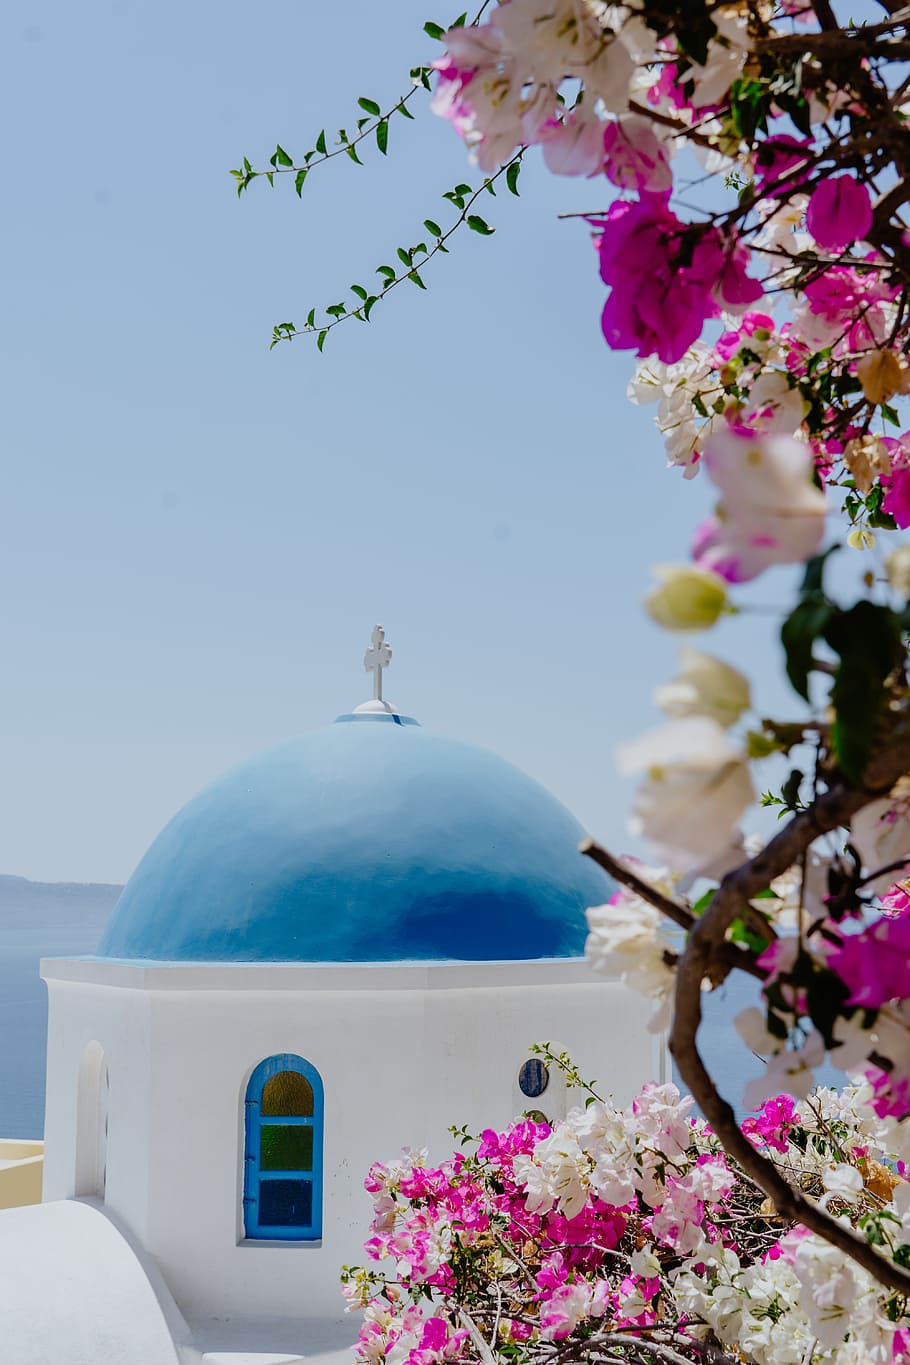 Santorini Dome Chapel, Greece, city, flower, blue, building, floral